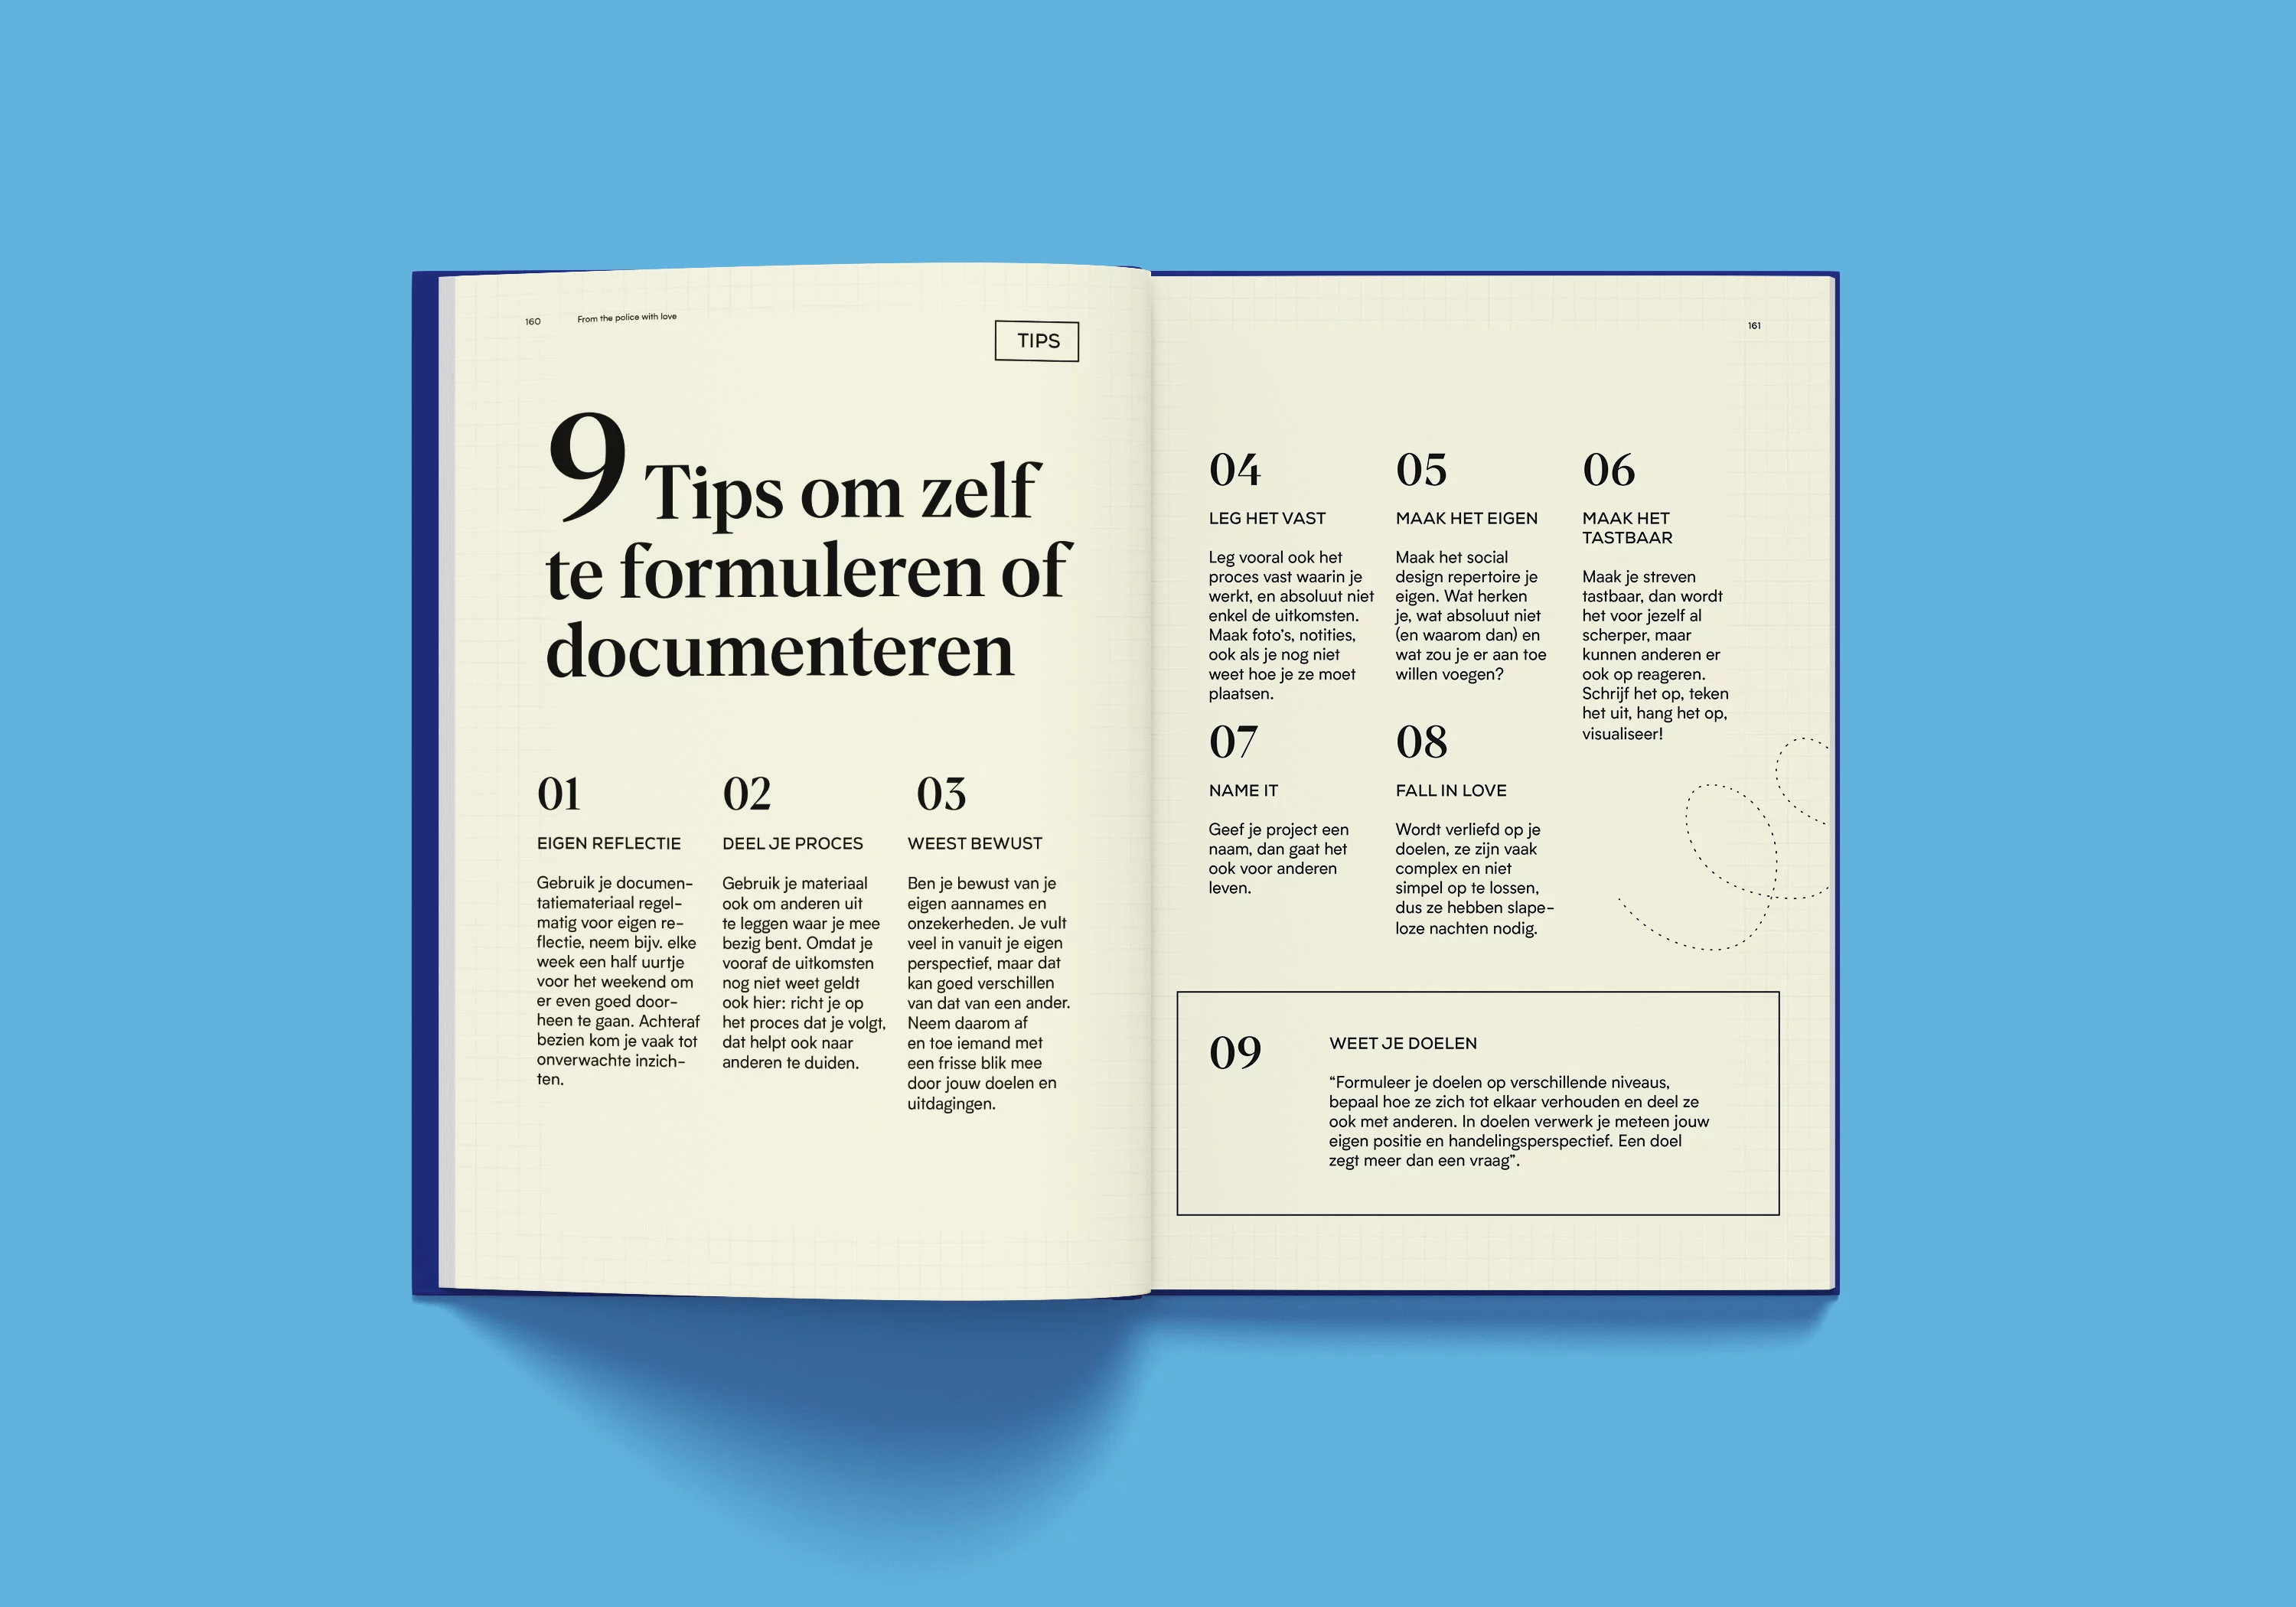 Pagina met 9 tips om zelf te formuleren of documenteren.